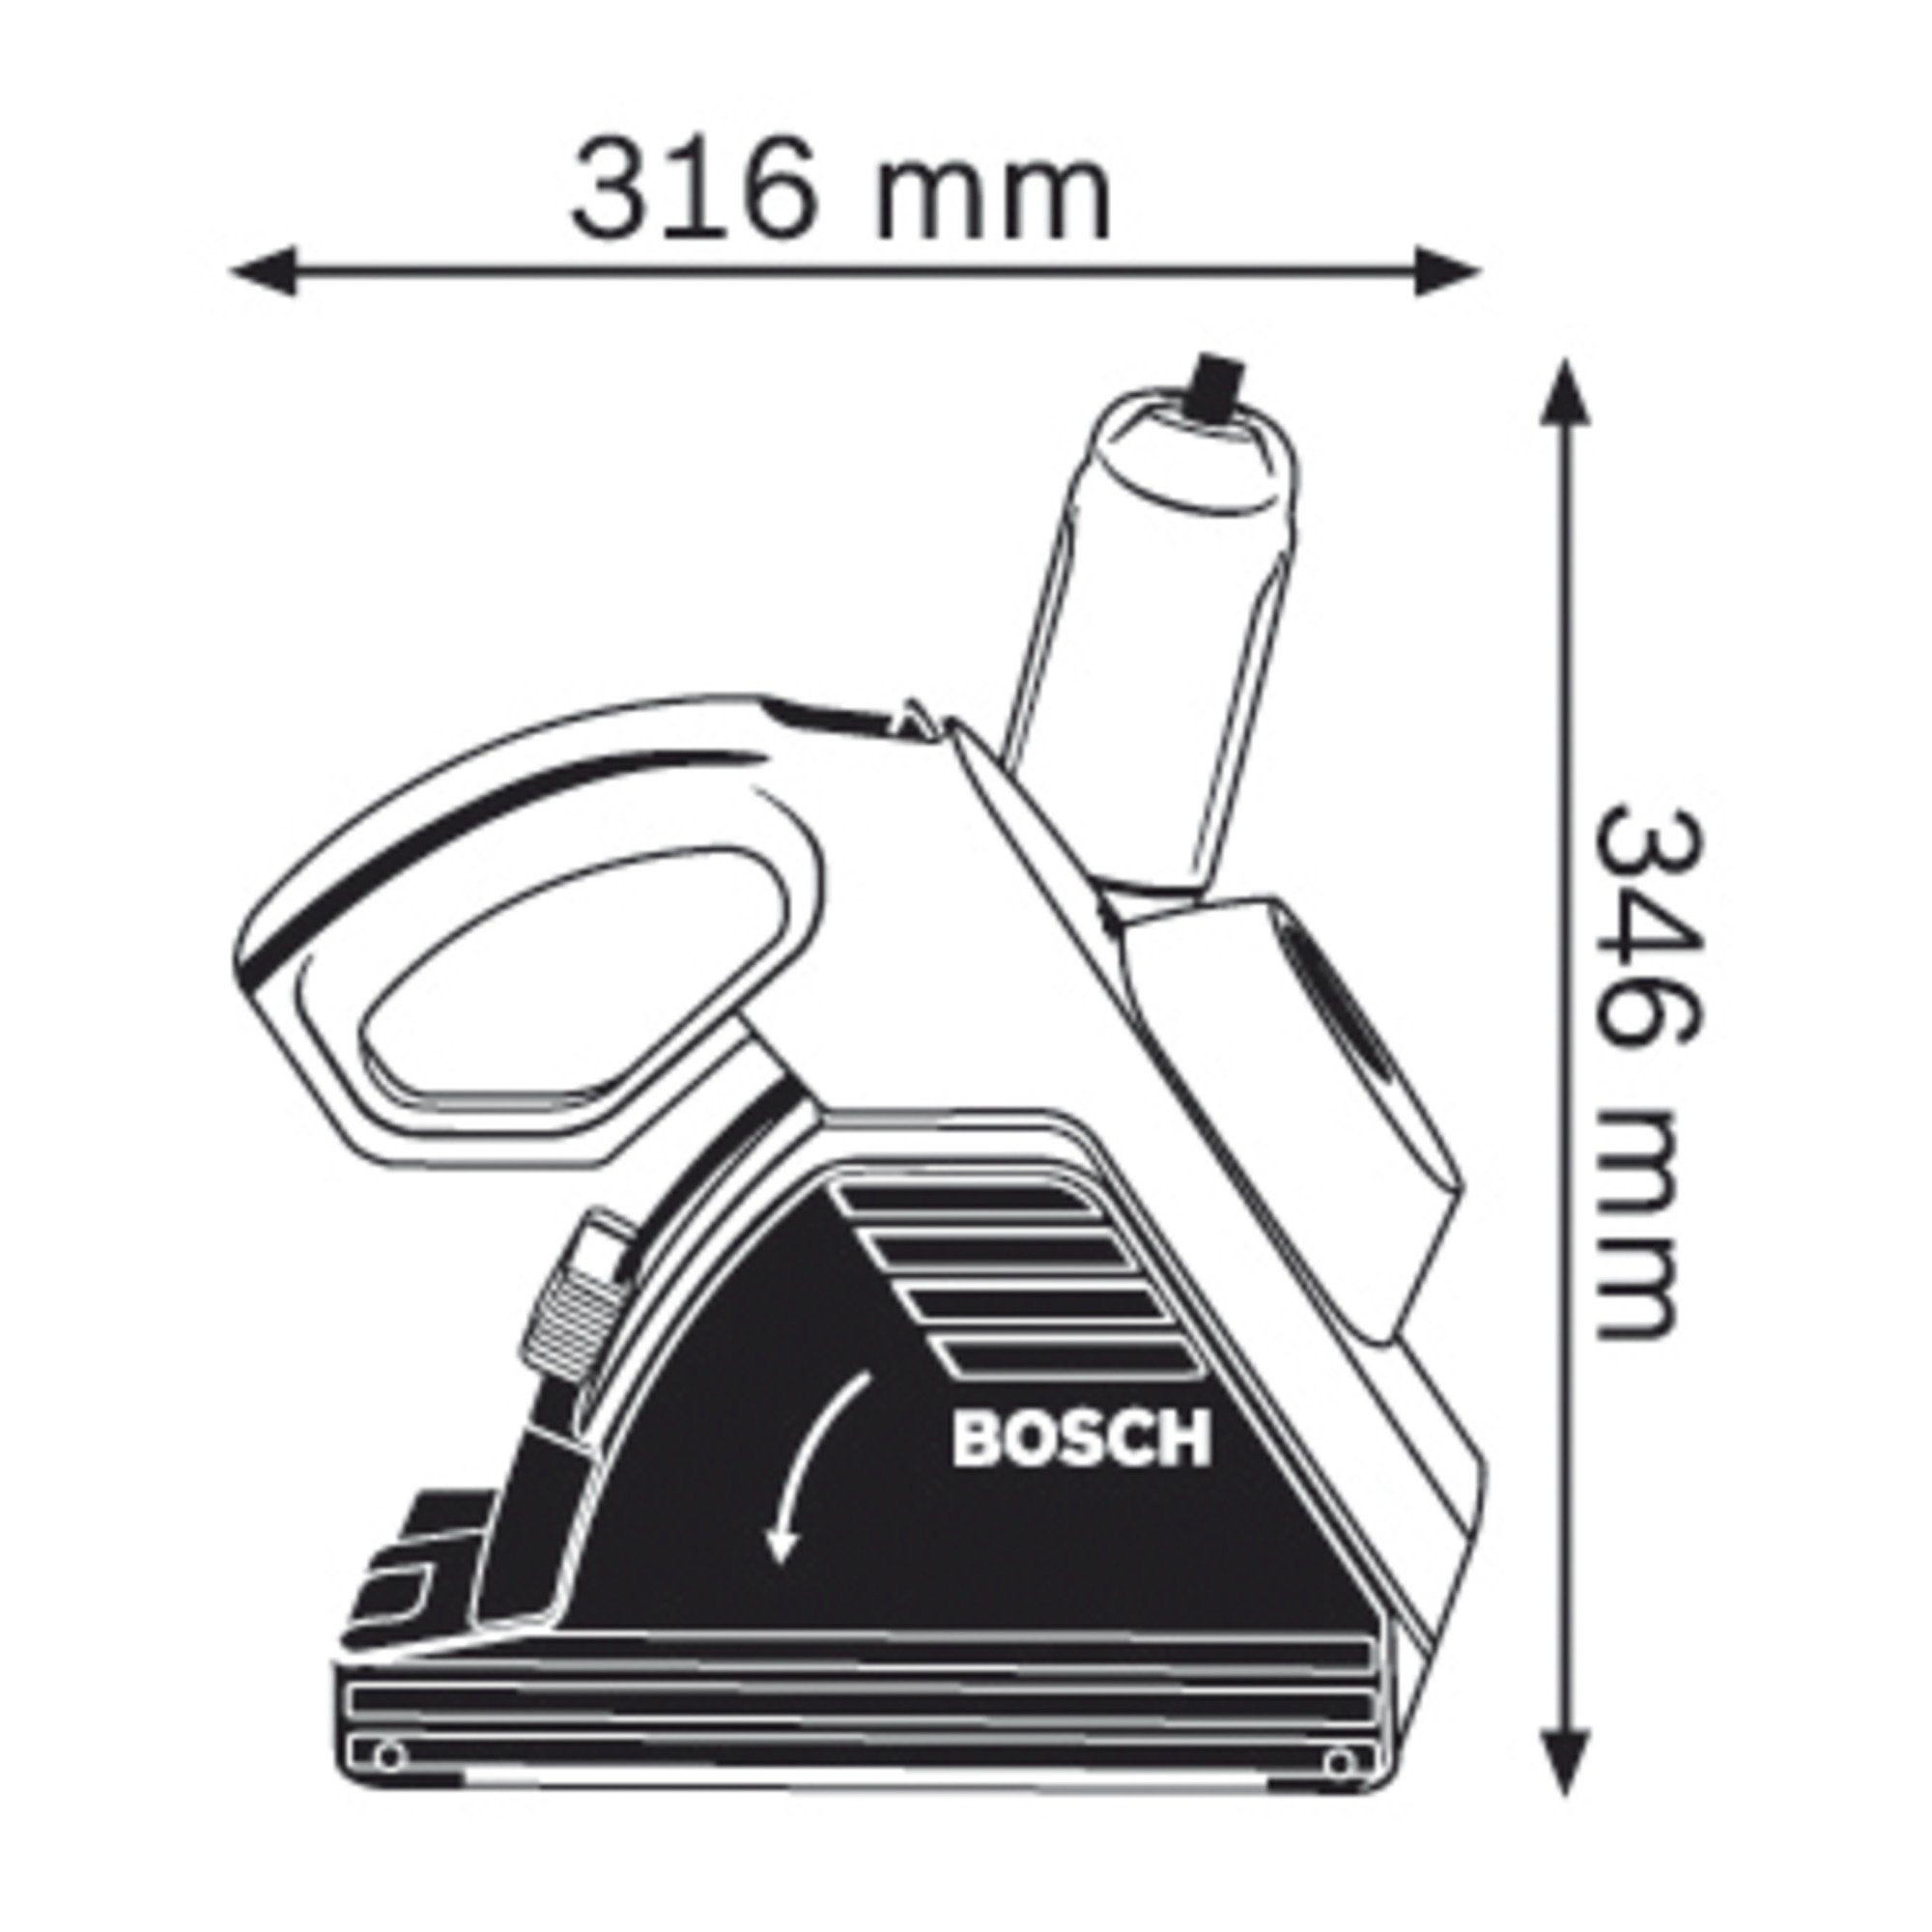 BOSCH Mauernutfräse Mauer-Nutfräse GNF CA Professional Bosch 35